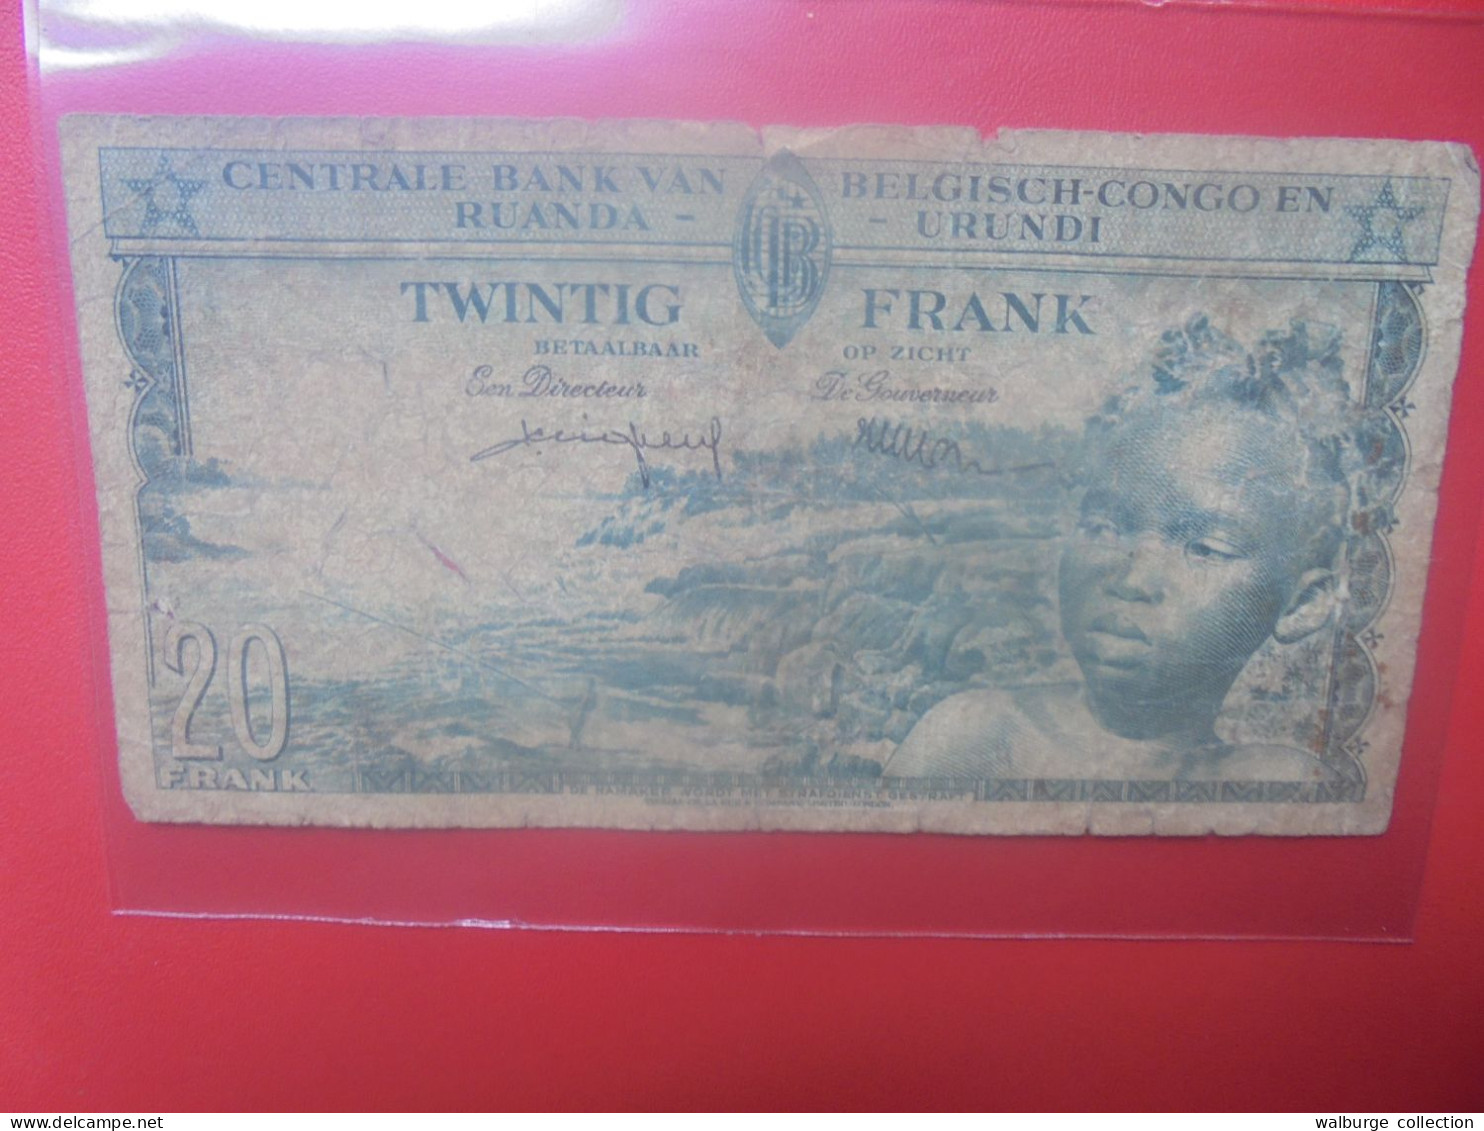 CONGO BELGE 20 FRANCS 1-6-57 Circuler (B.33) - Belgian Congo Bank